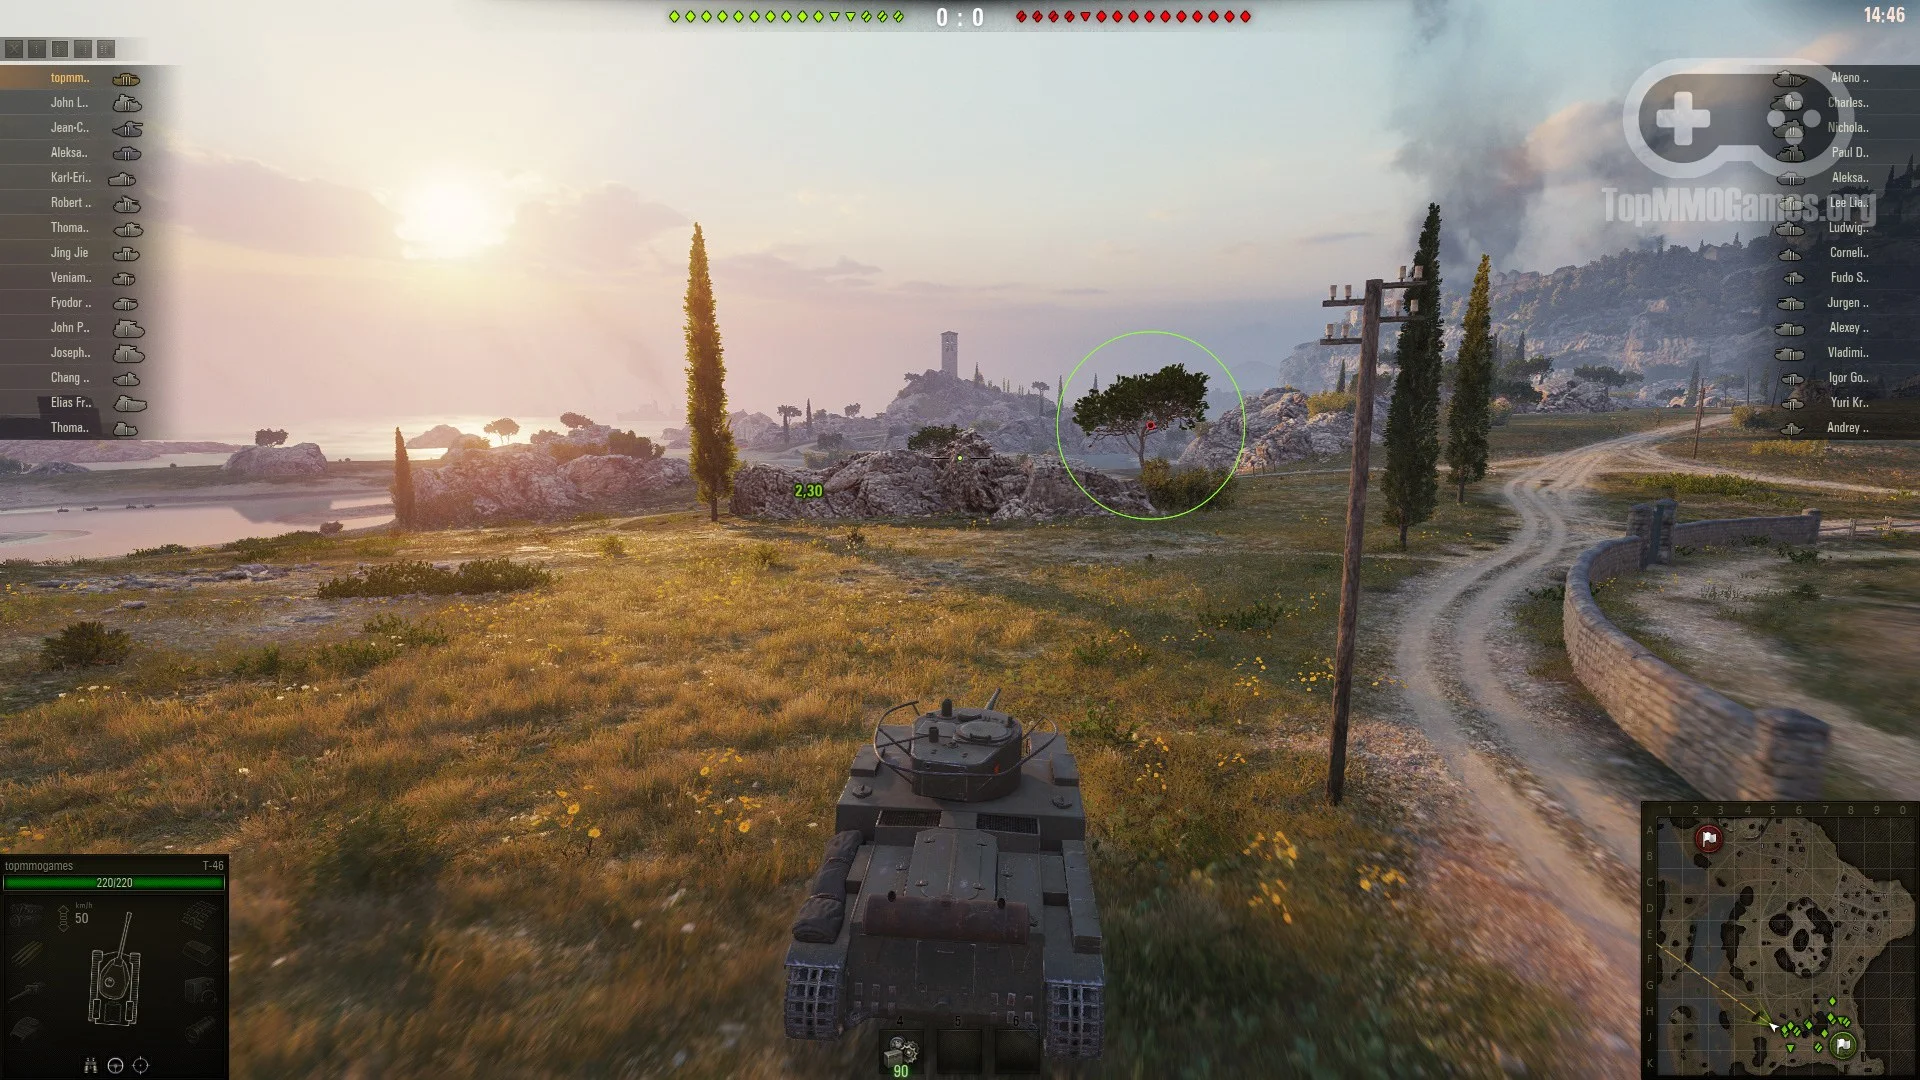 Обложка: скриншот из игры World of Tanks